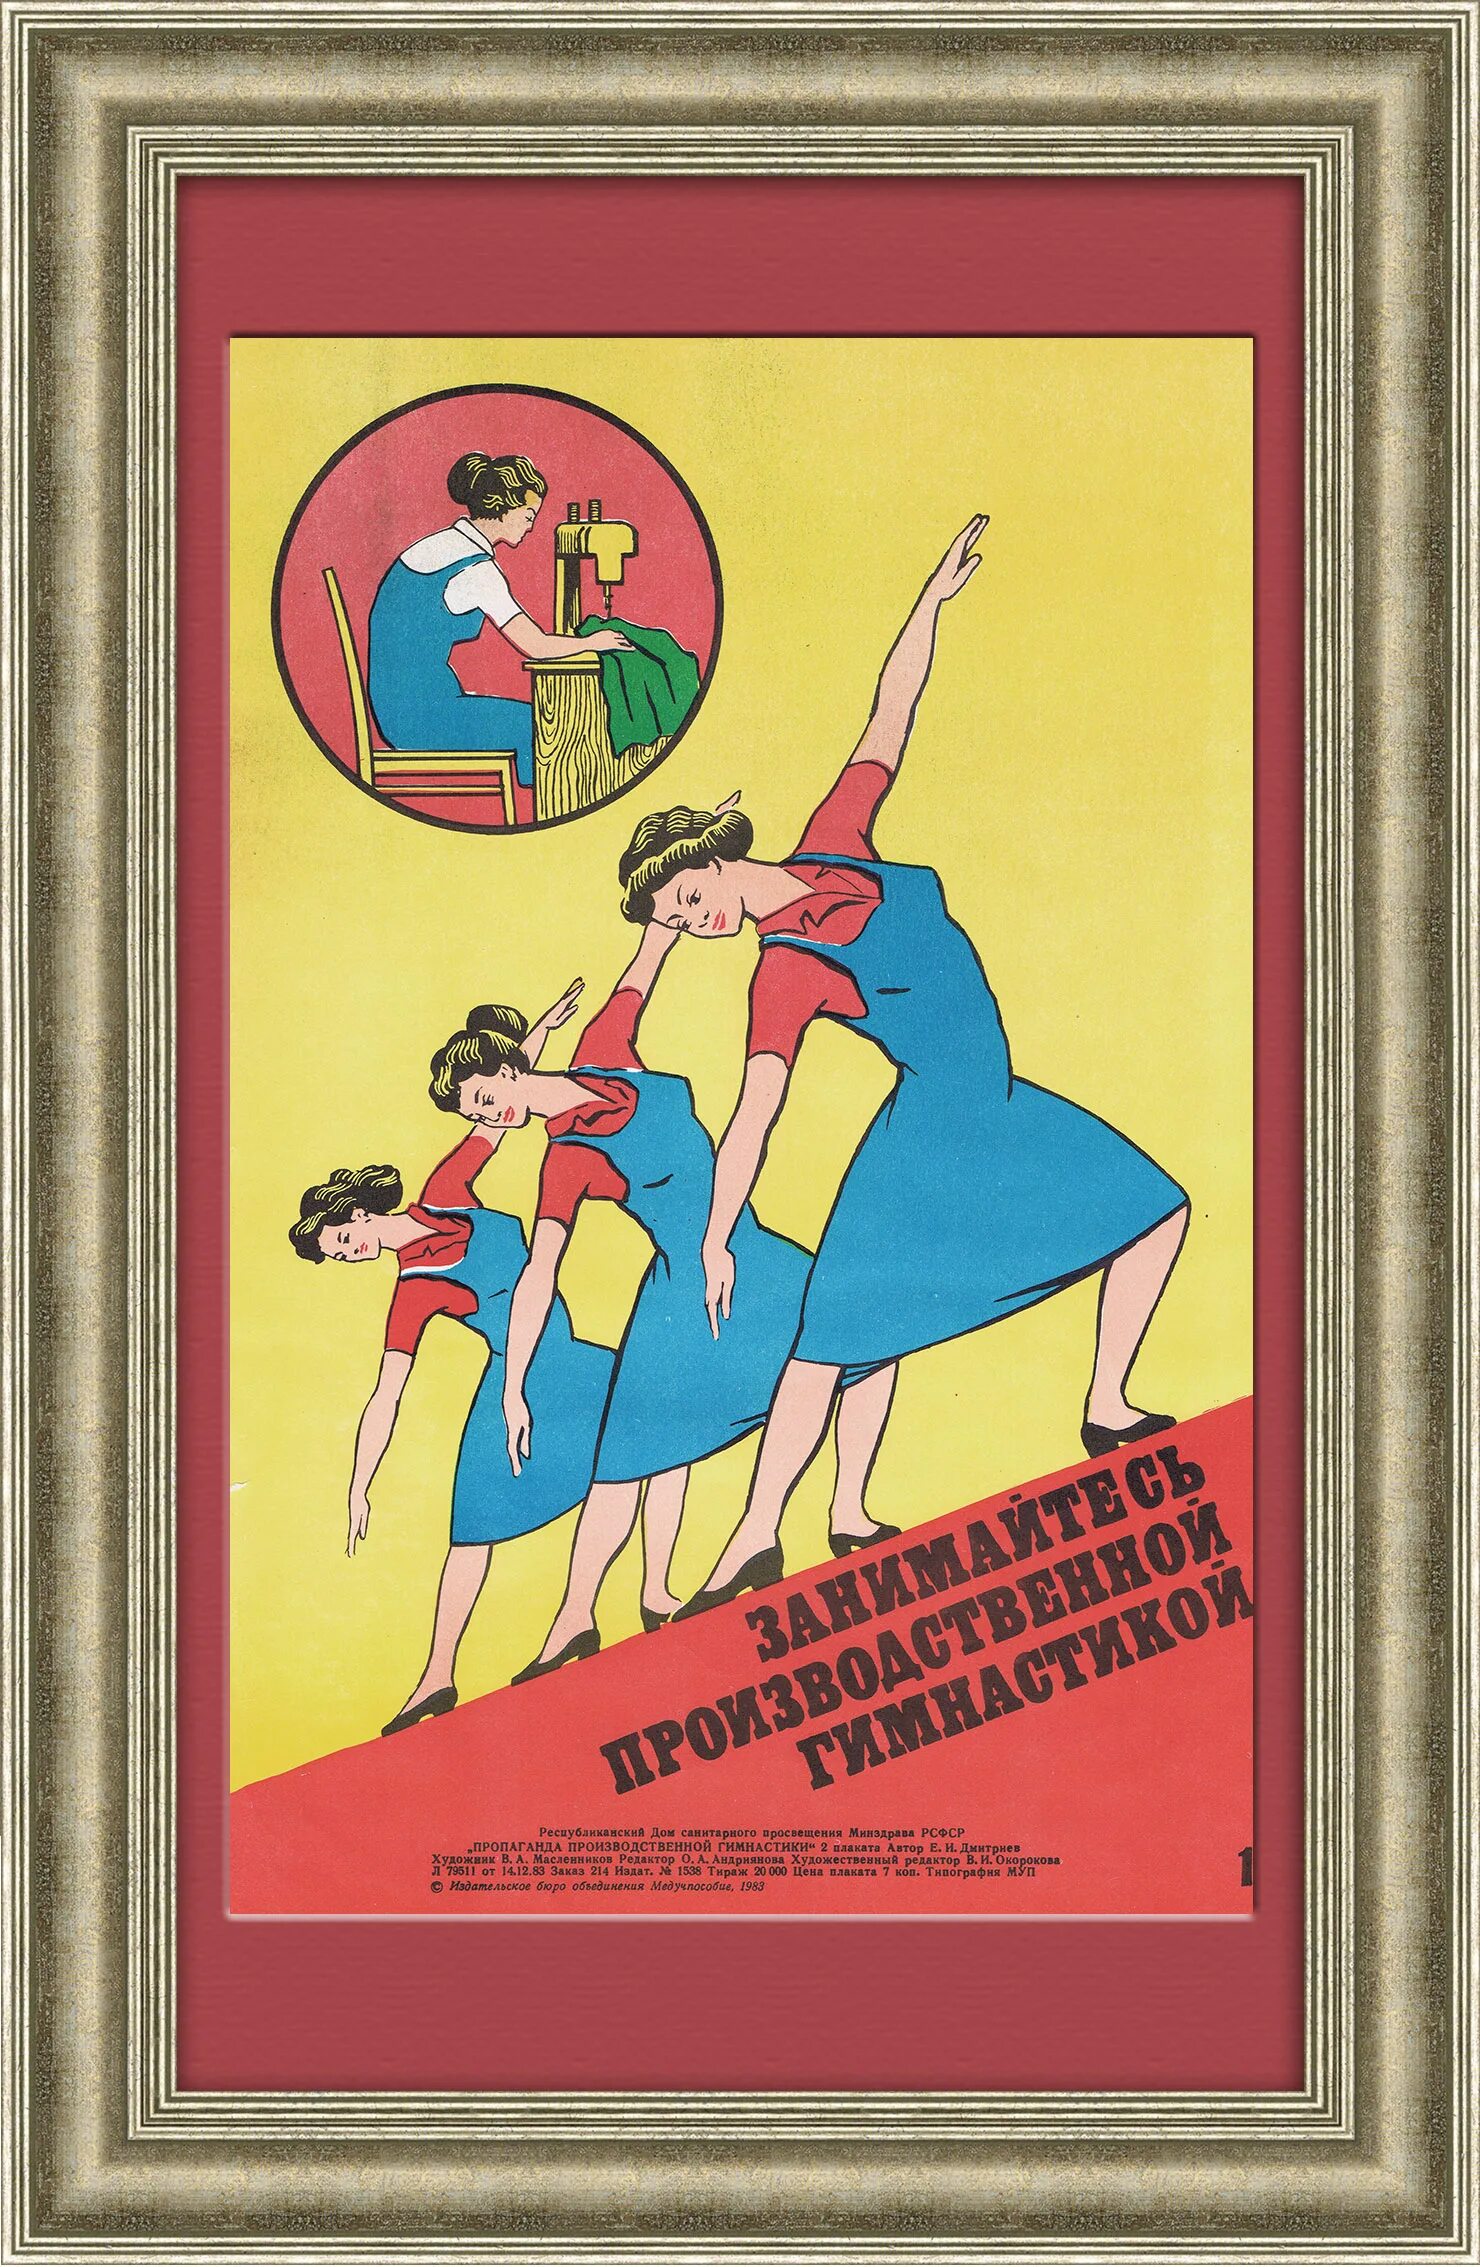 Производственная гимнастика. Производственная гимнастика СССР. Производственная гимнастика плакат. Лозунги про производственную гимнастику. Плакат гимнастики